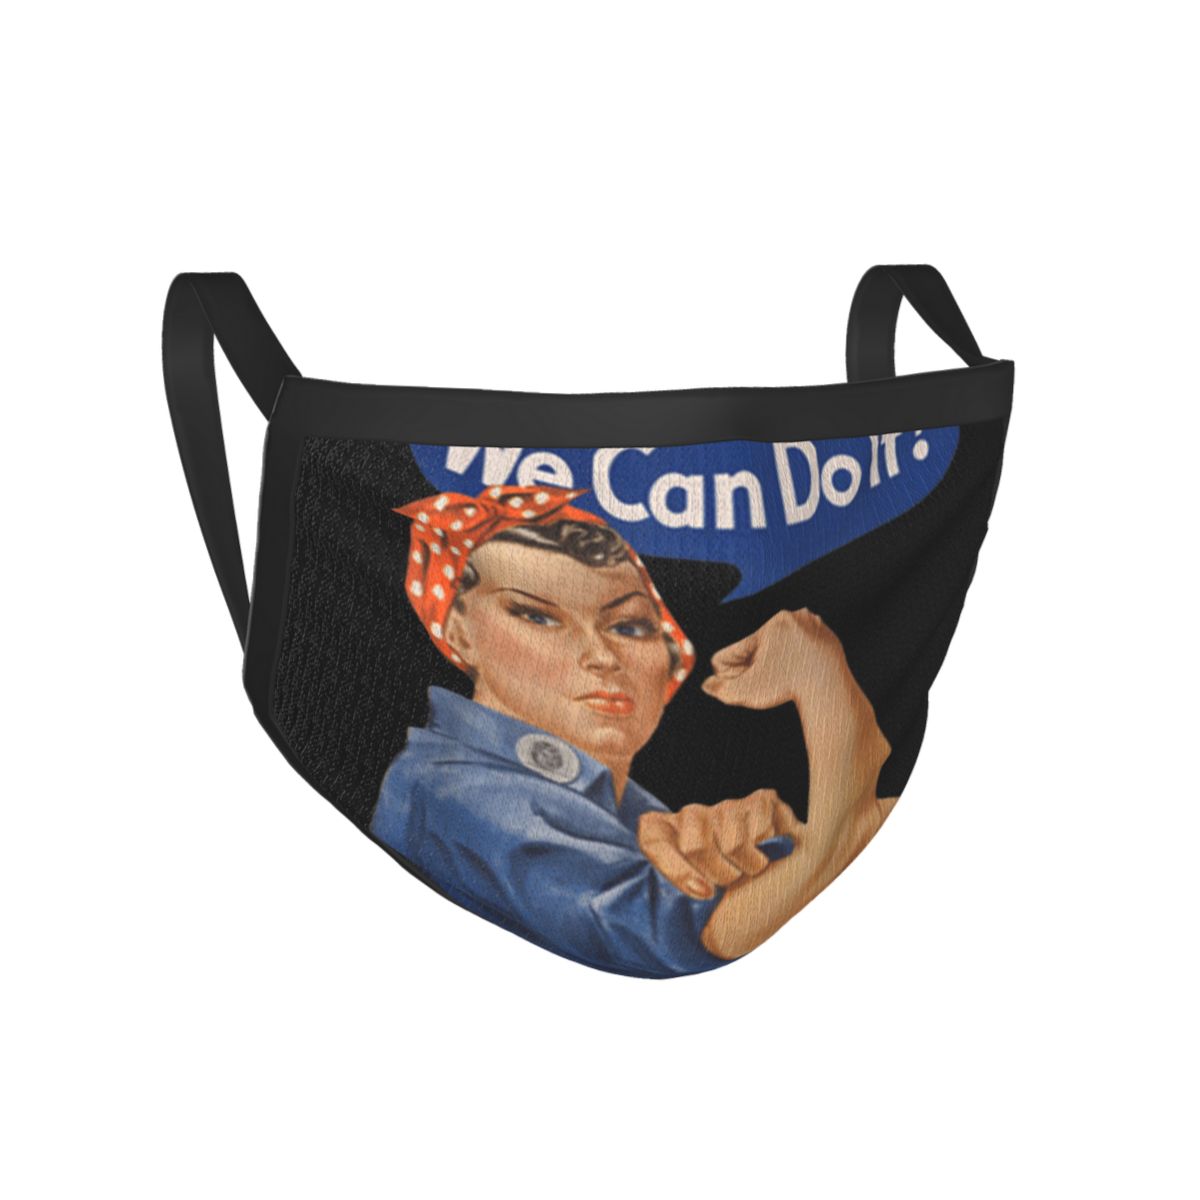 Rosie The Riveter We Can Do It, masque féminin de dessin animé rétro T, texte de dessin animé célèbre esthétique